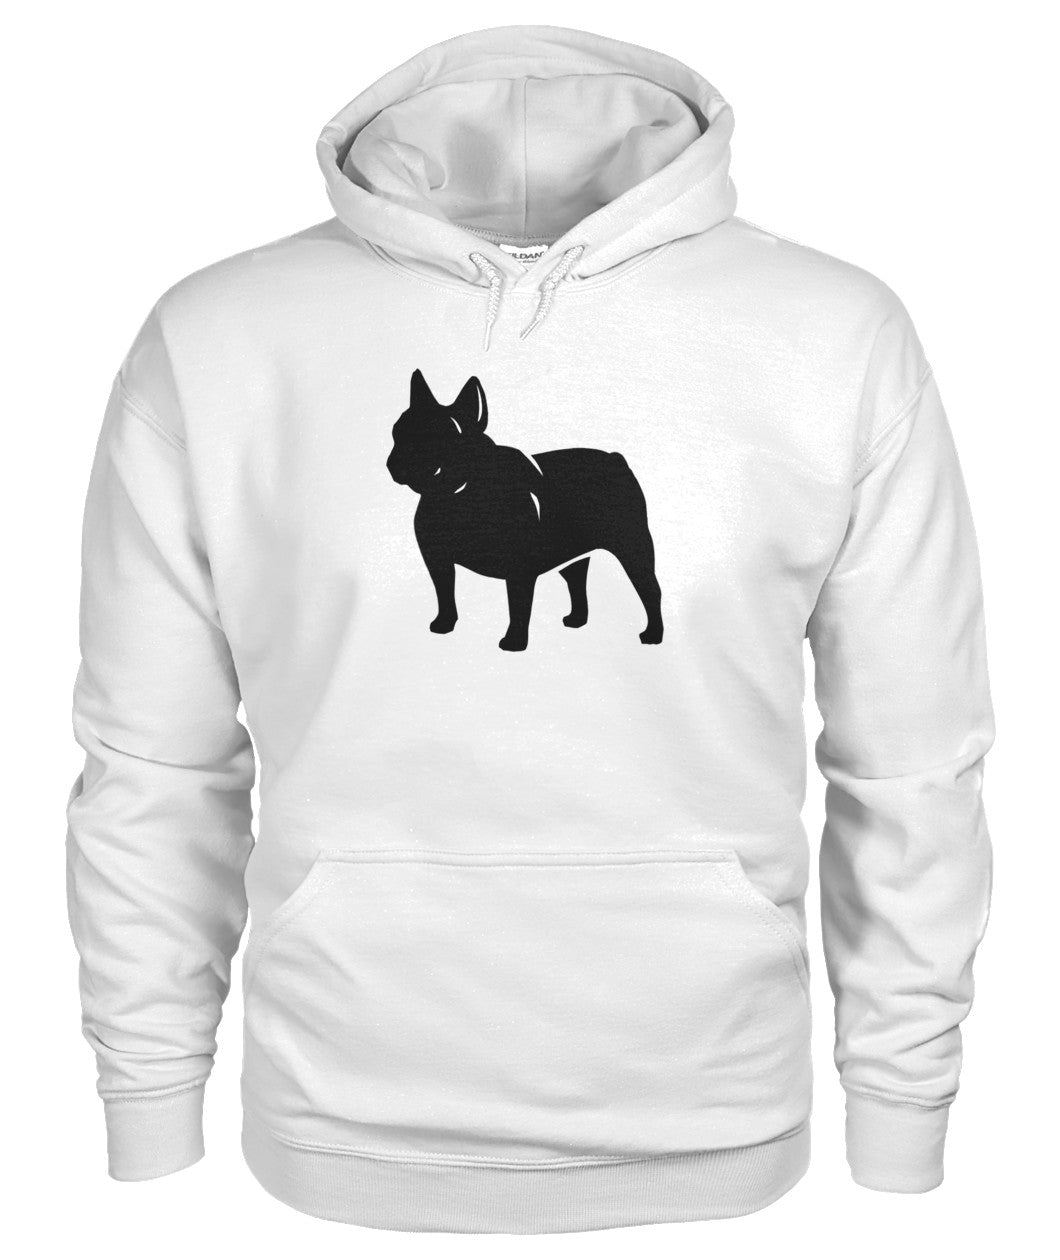 french bulldog sweatshirt